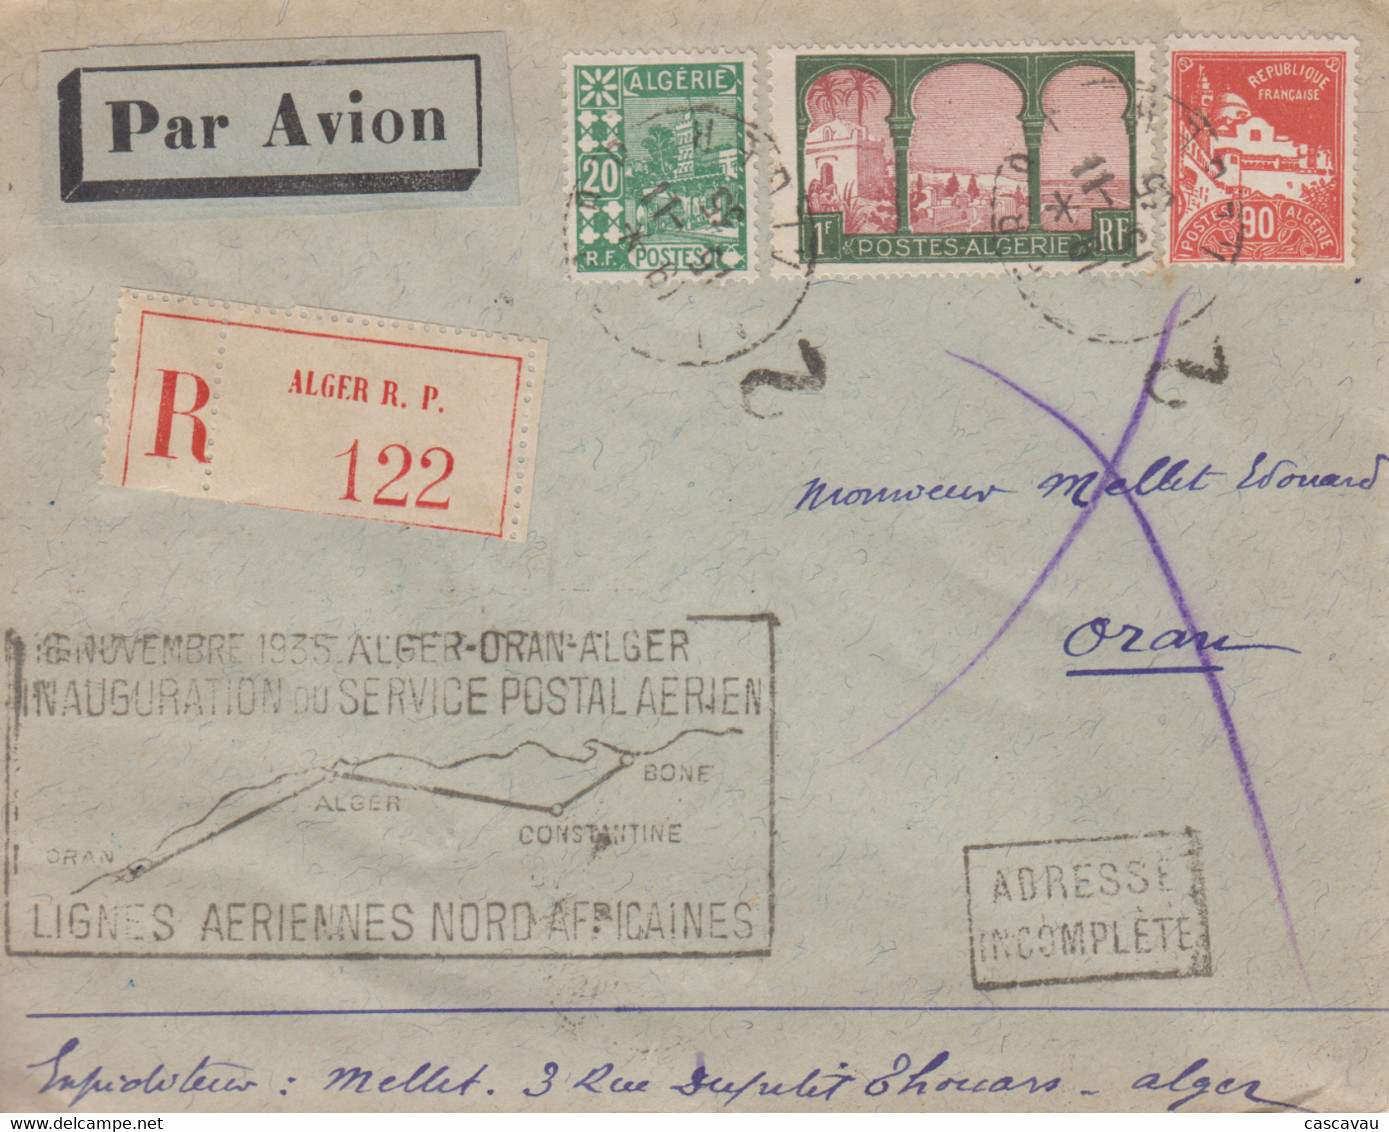 Enveloppe  Recommandée  ALGERIE   Inauguration   Service  Postal   Aérien    ALGER - ORAN - ALGER   1935 - Luchtpost